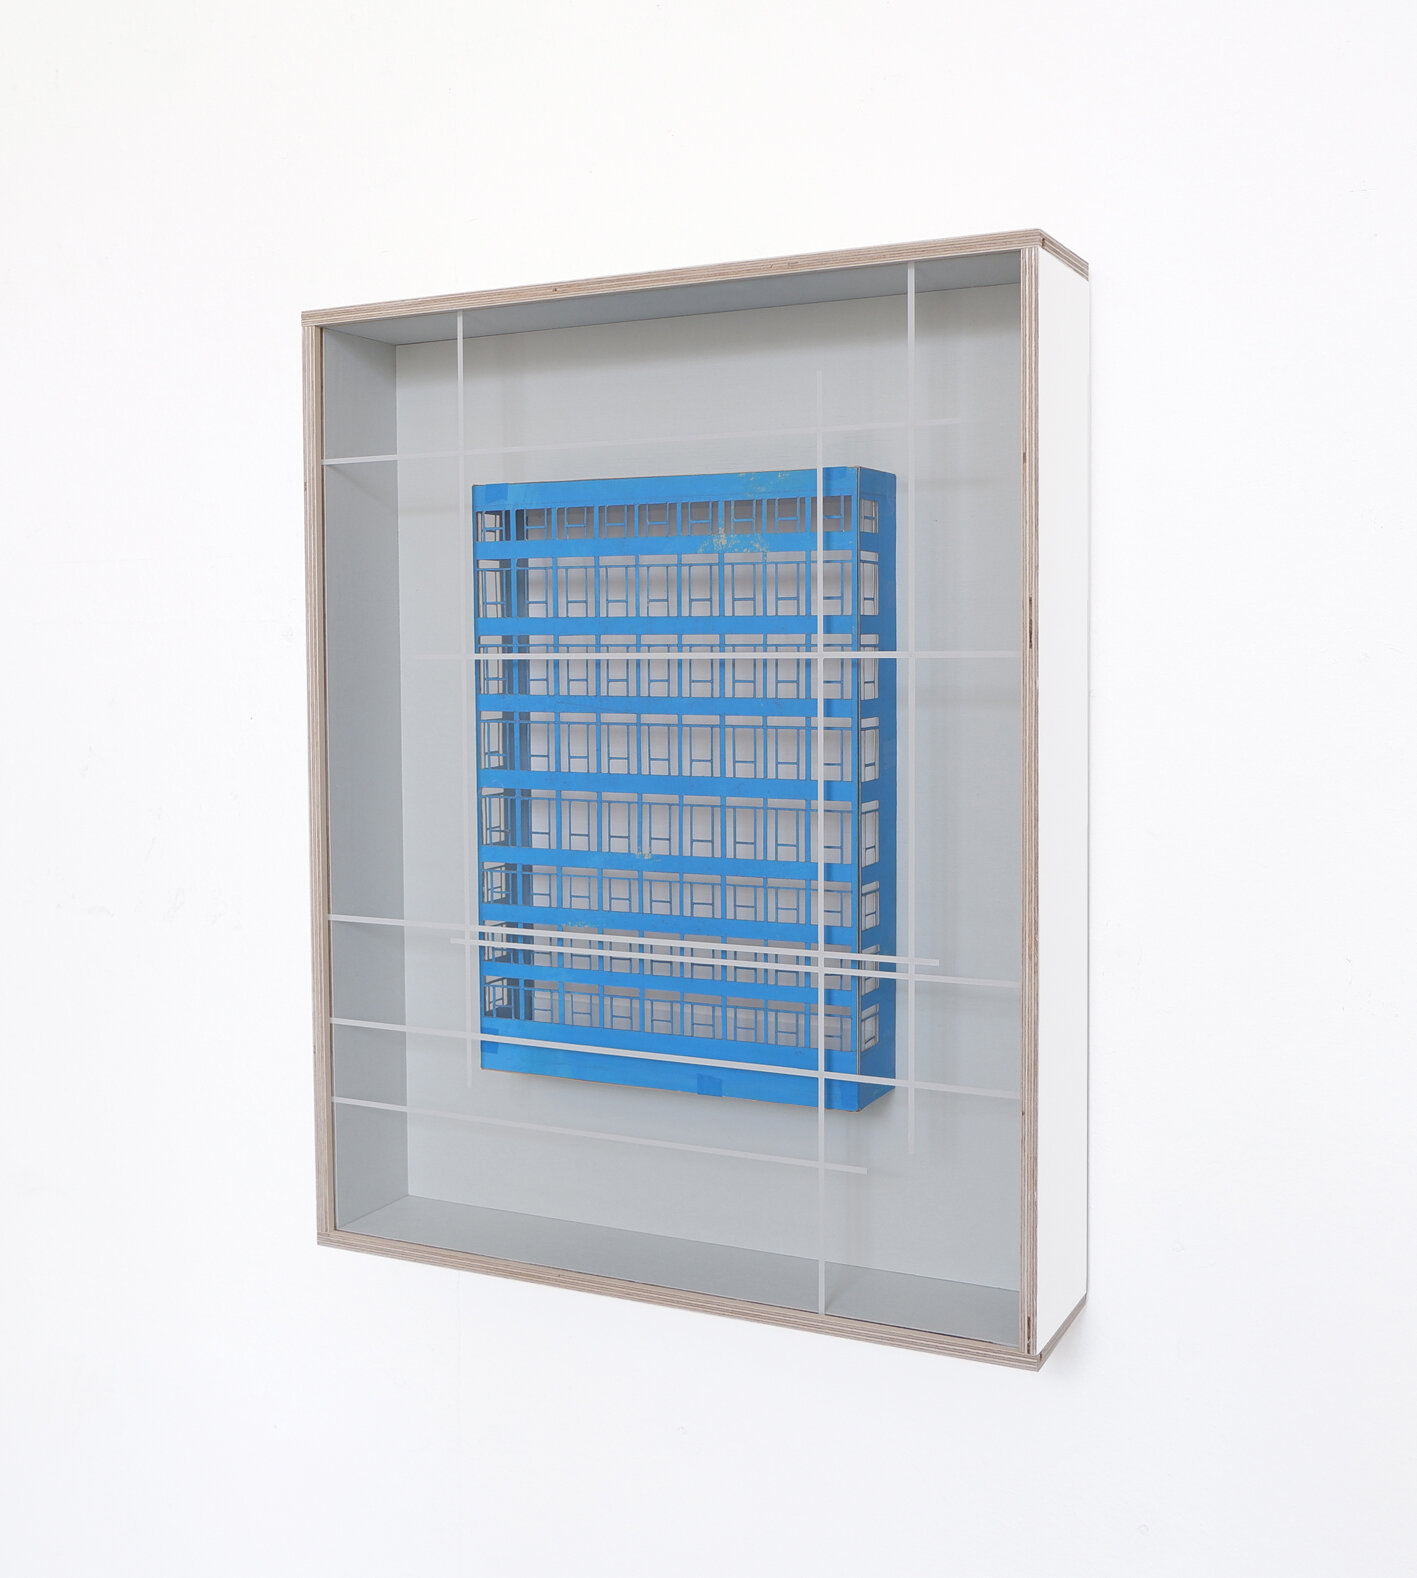  Die Fehlbarkeit der Einsichten BR, 2019,  Holz, Karton, Acrylglas, Farbe, 56 x 44 x 10 cm 